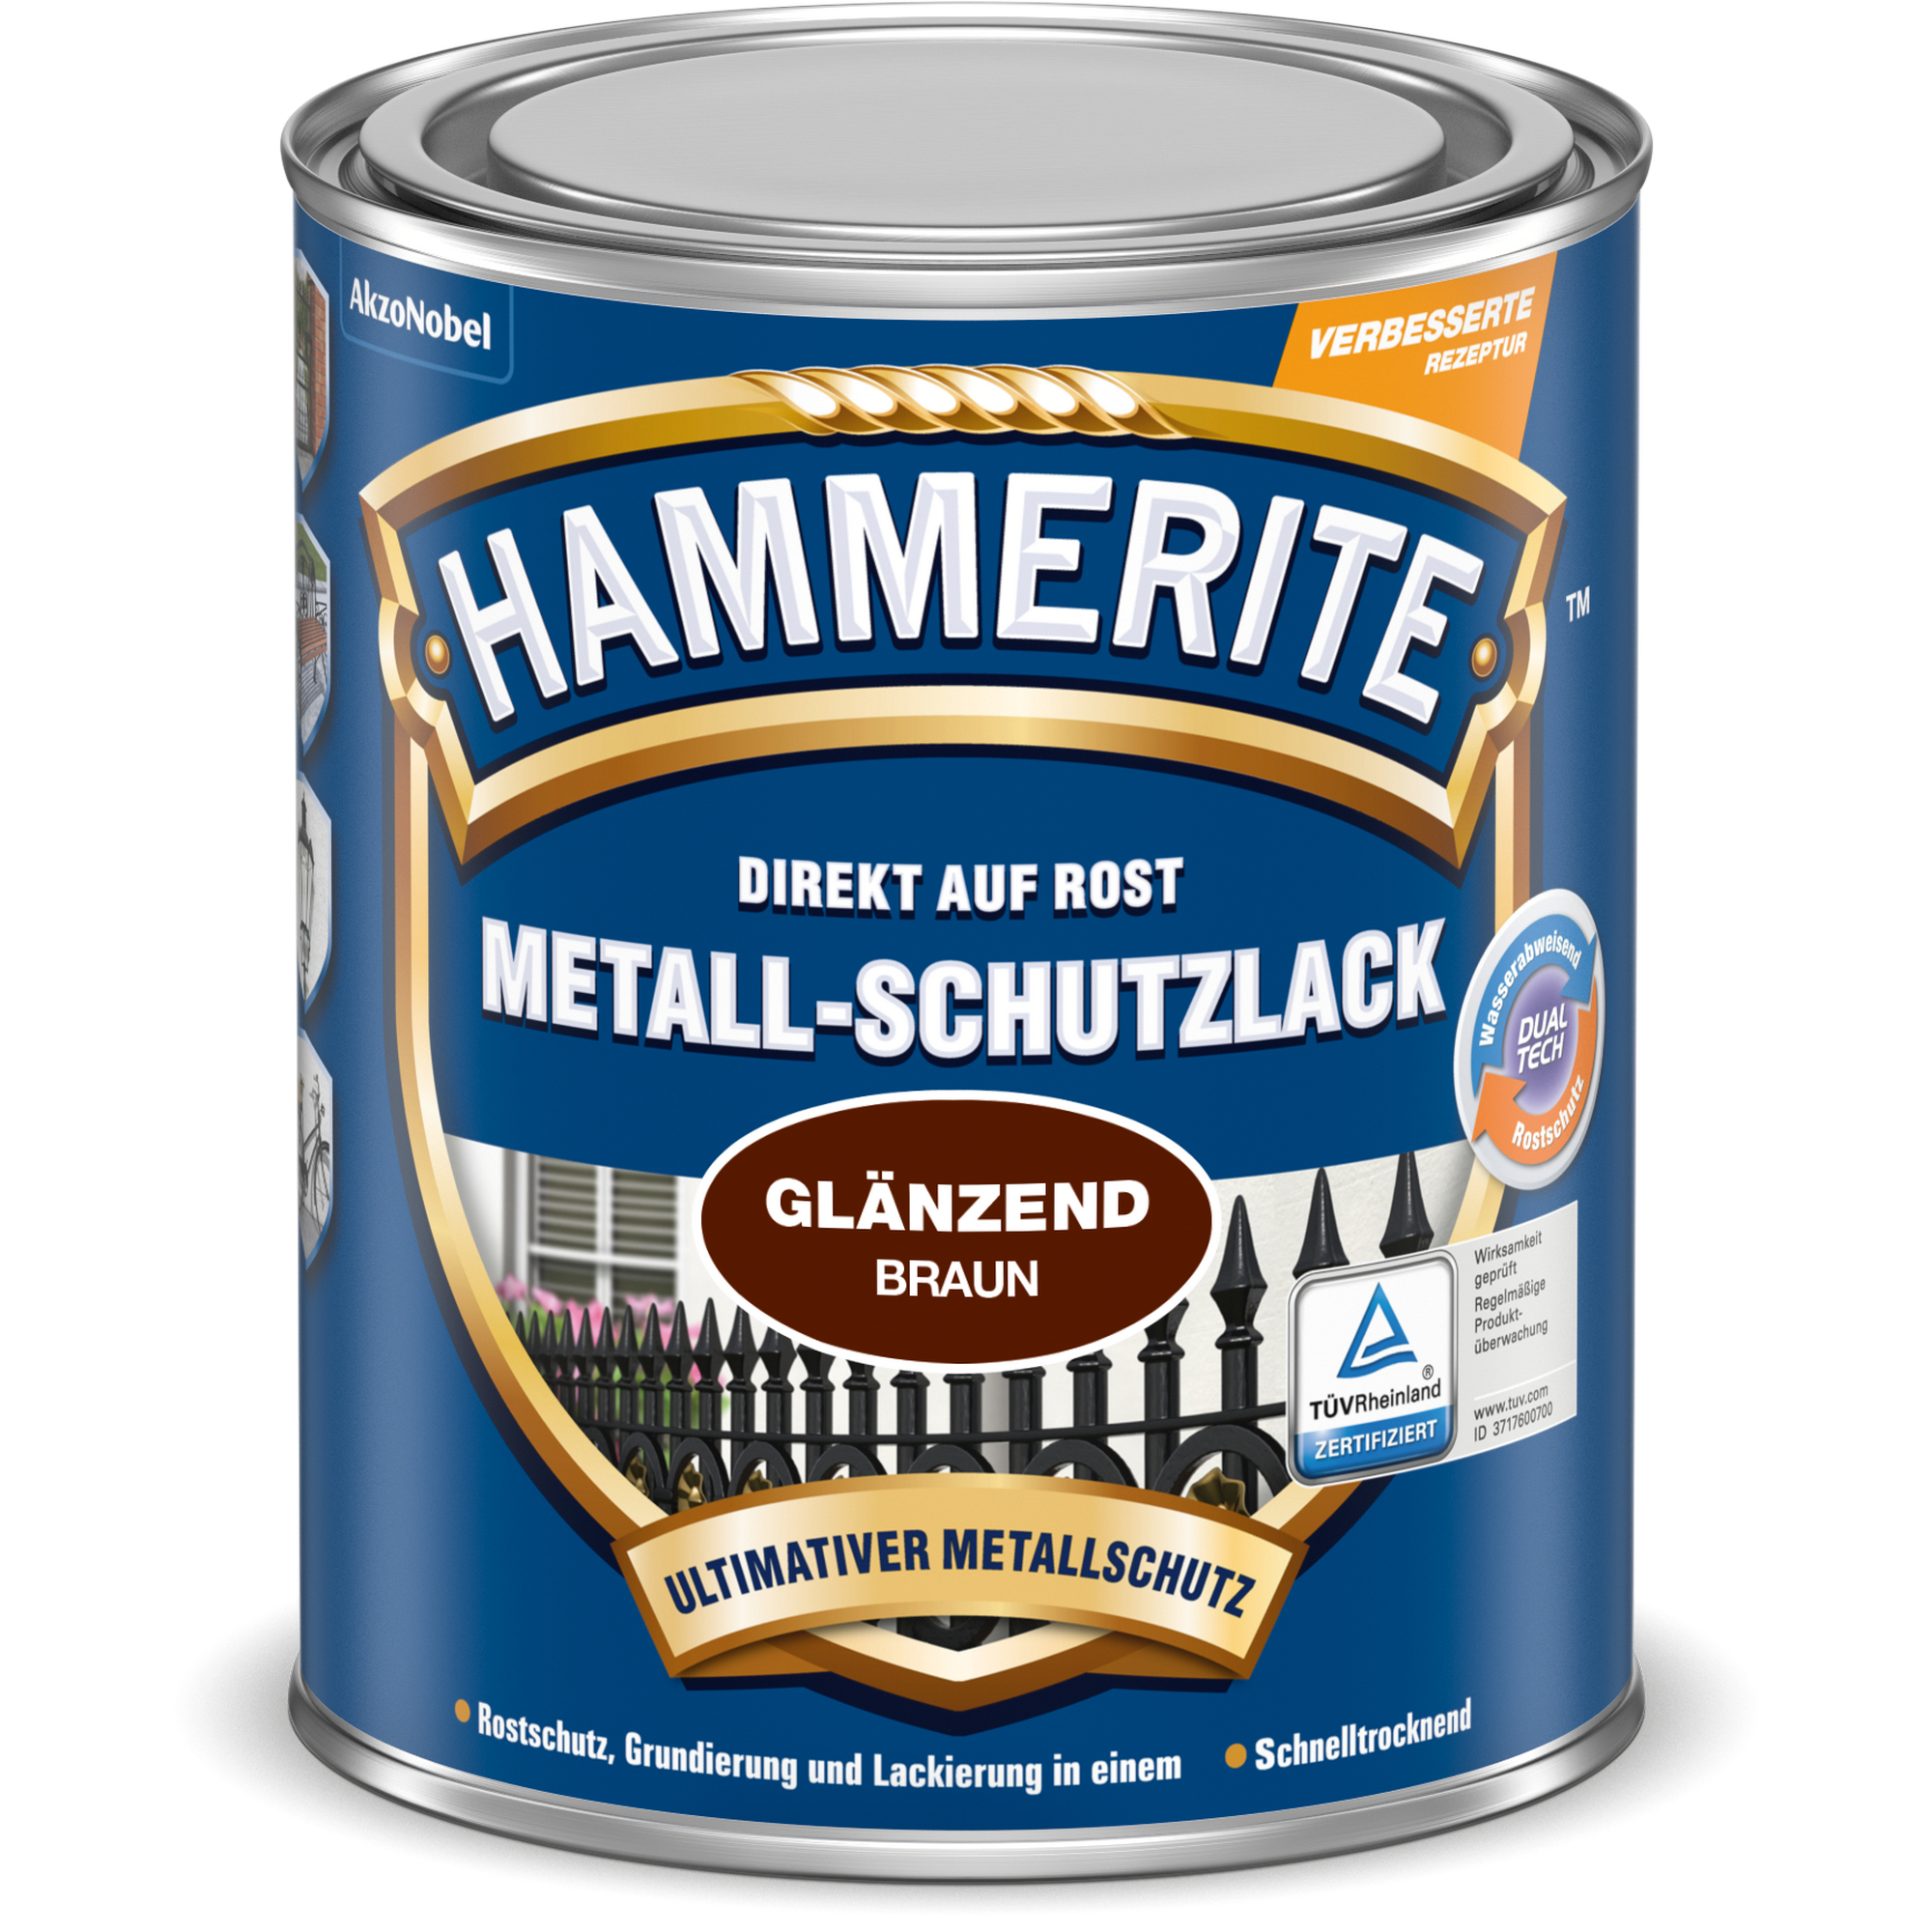 Metallschutzlack 'Direkt auf Rost' braun glänzend 750 ml + product picture